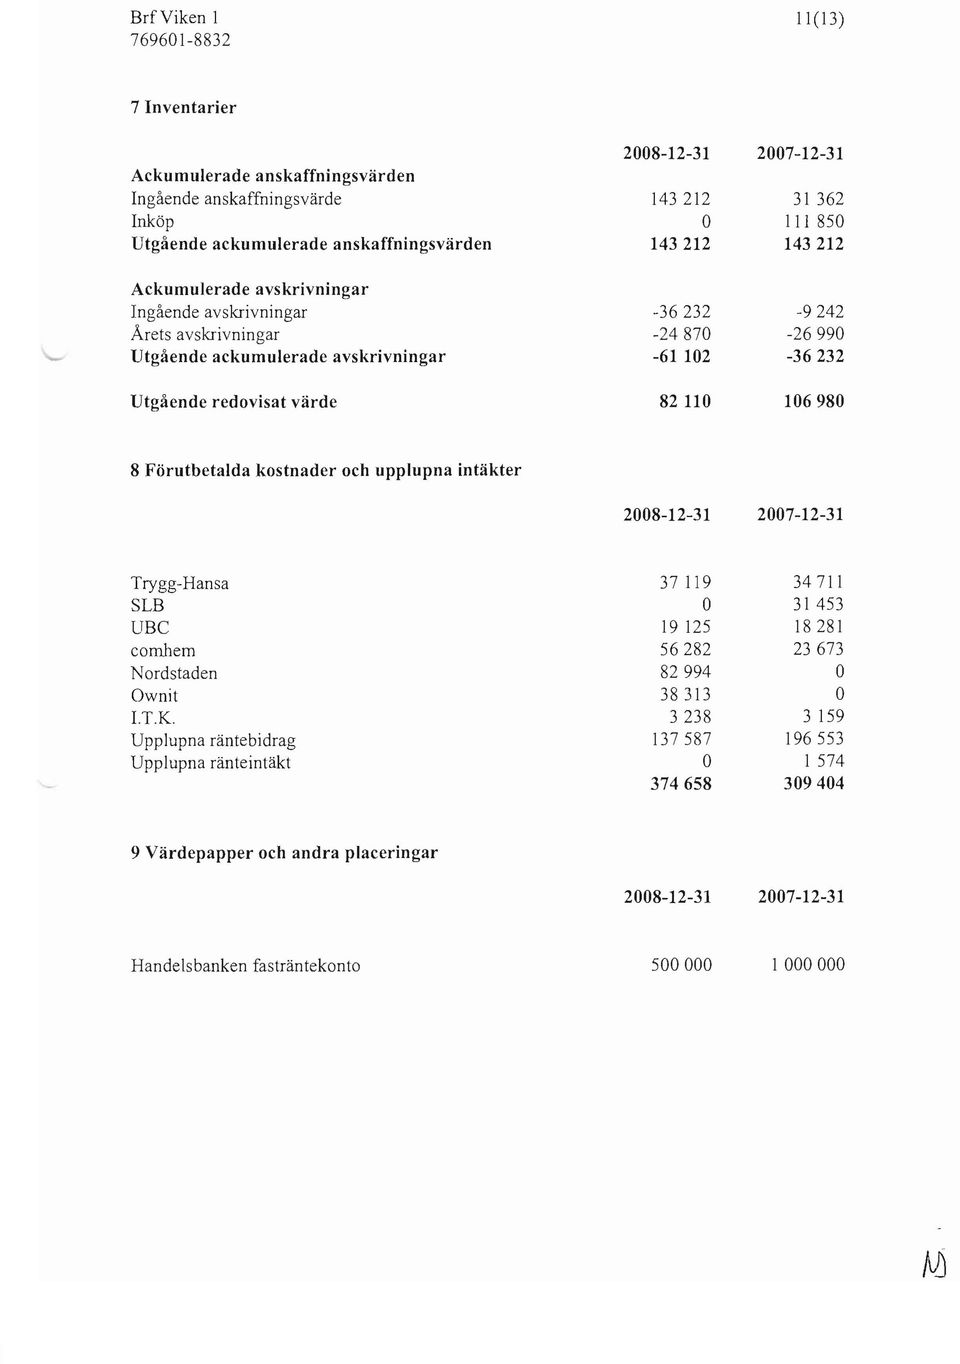 -26990-36232 106980 8 Förutbetalda kostnader och upplupna intäkter 2008-12-31 2007-12-31 Trygg-Hansa SLB UBC combem Nordstaden wnit I.T.K.